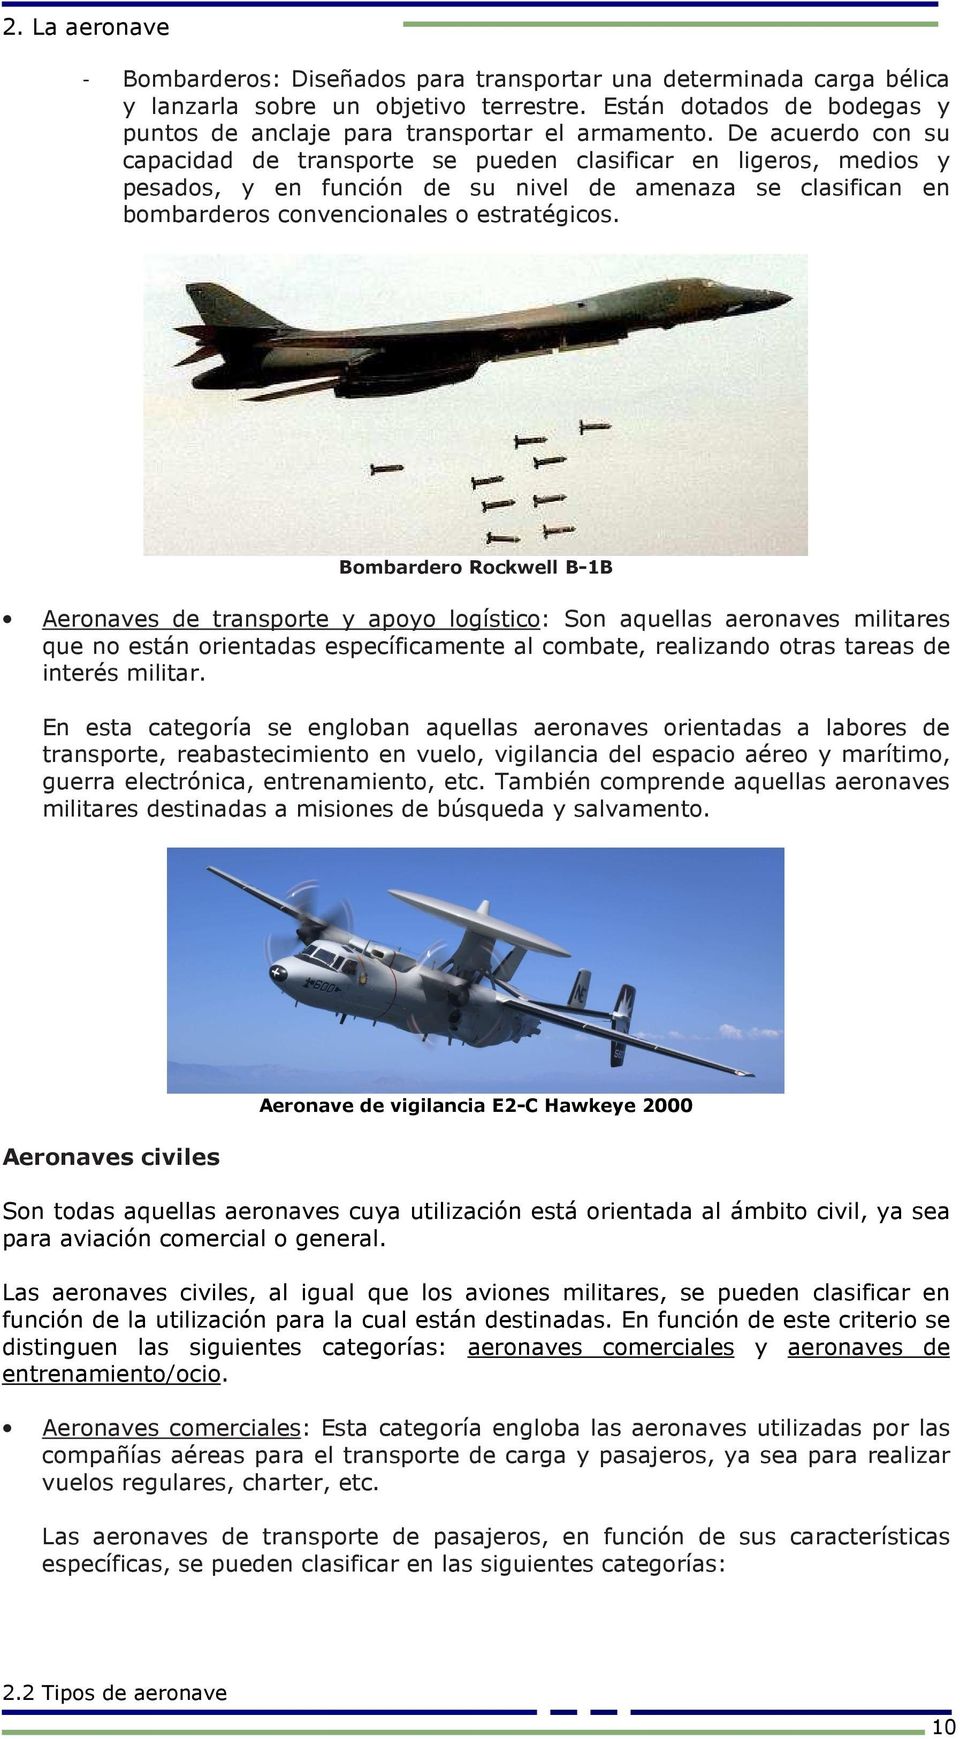 Bombardero Rockwell B-1B Aeronaves de transporte y apoyo logístico: Son aquellas aeronaves militares que no están orientadas específicamente al combate, realizando otras tareas de interés militar.